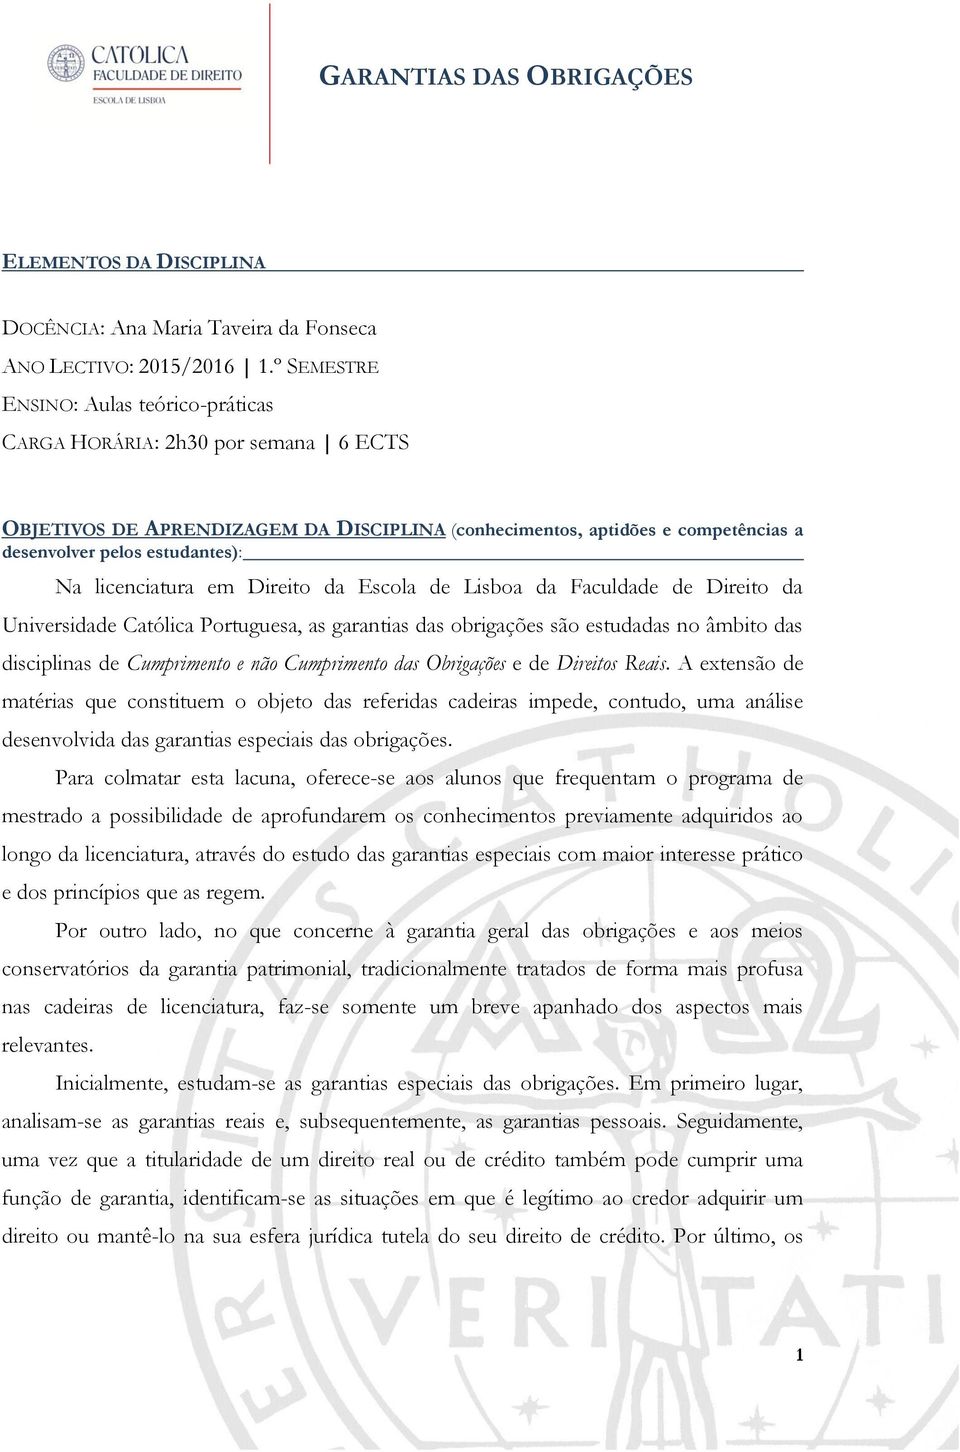 licenciatura em Direito da Escola de Lisboa da Faculdade de Direito da Universidade Católica Portuguesa, as garantias das obrigações são estudadas no âmbito das disciplinas de Cumprimento e não